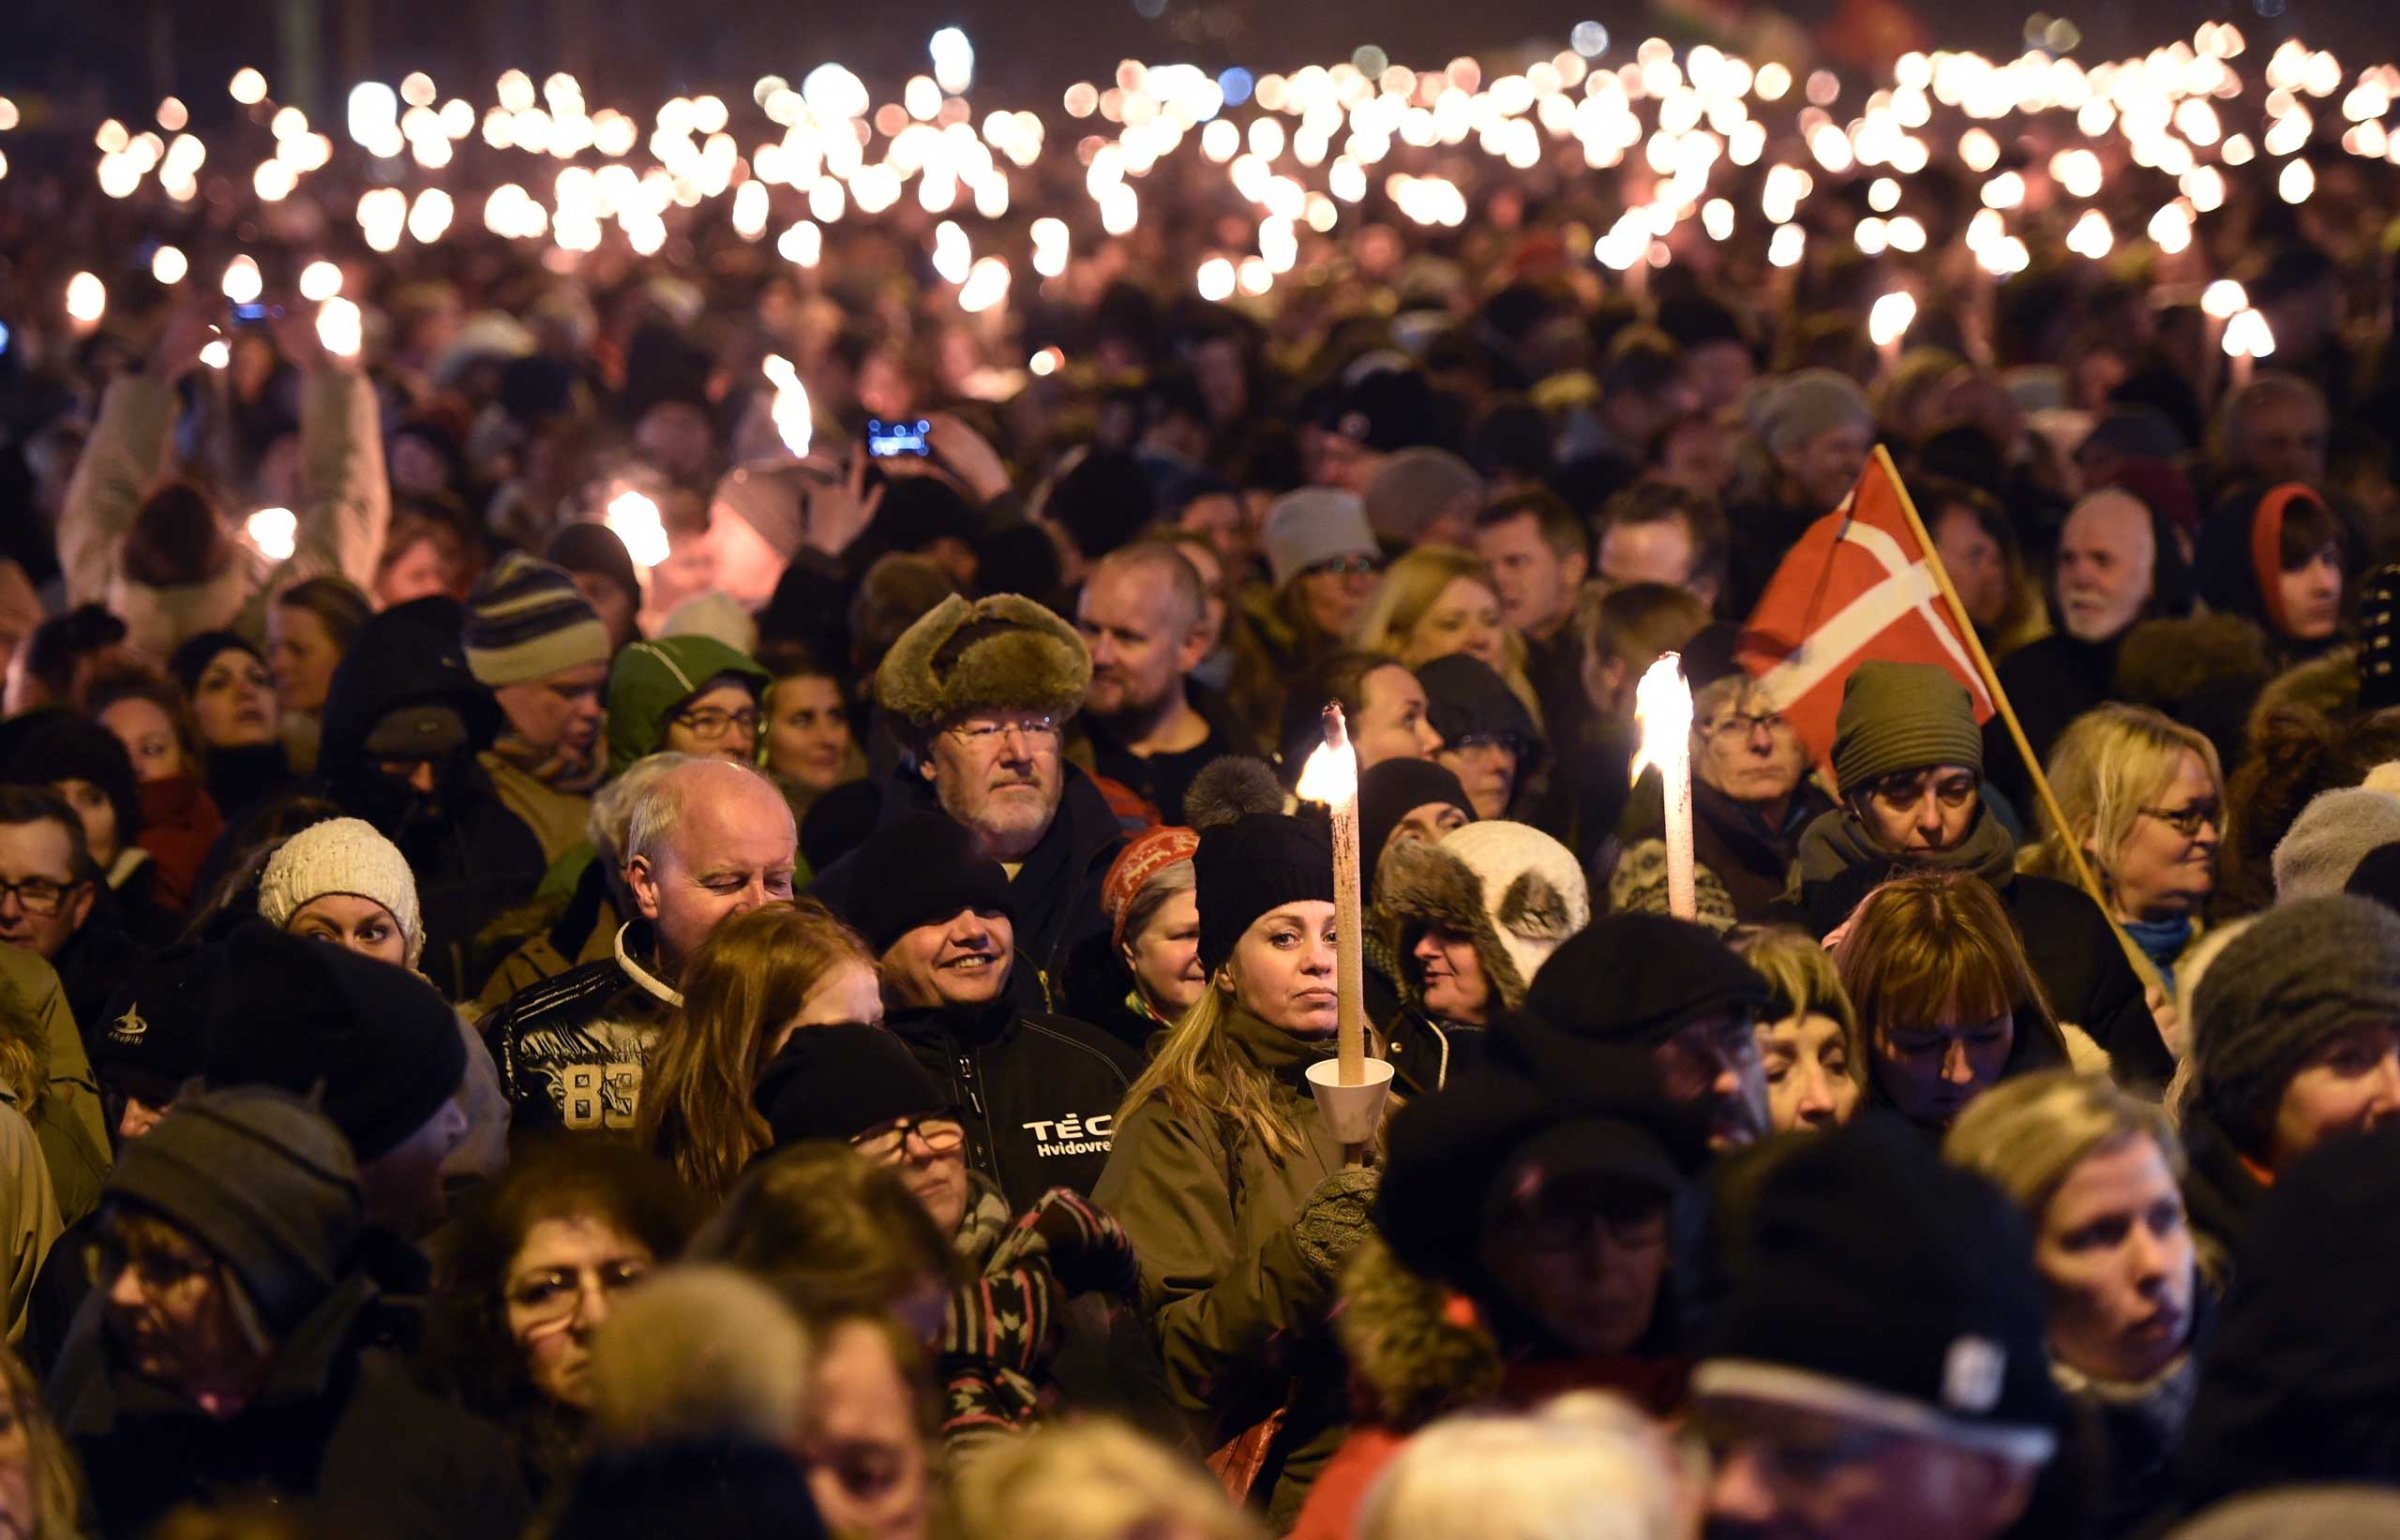 After terror attack in Copenhagen - Memorial service